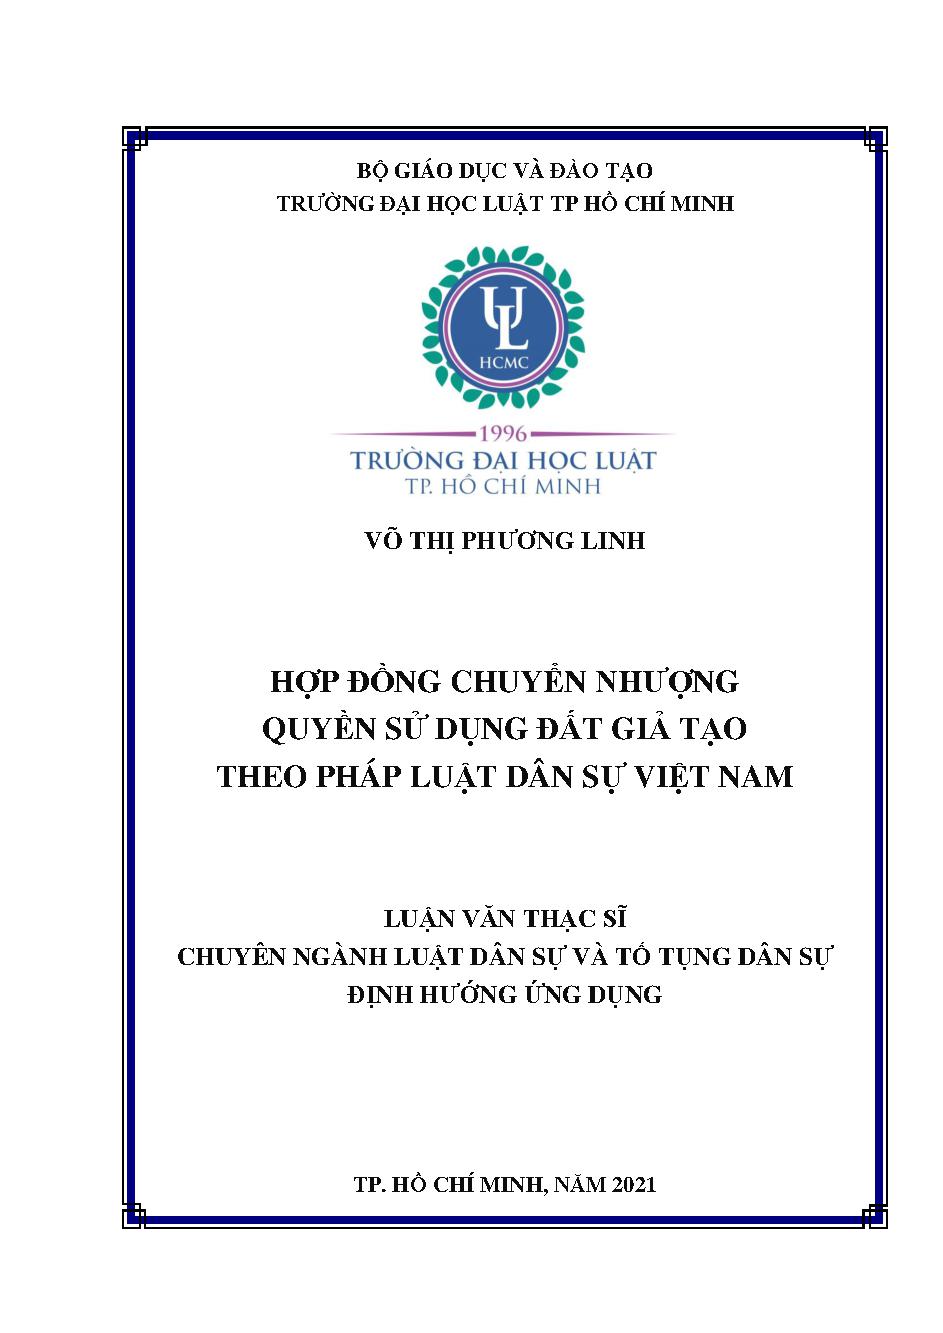 Hợp đồng chuyển nhượng quyền sử dụng đất giả tạo theo pháp luật dân sự Việt Nam